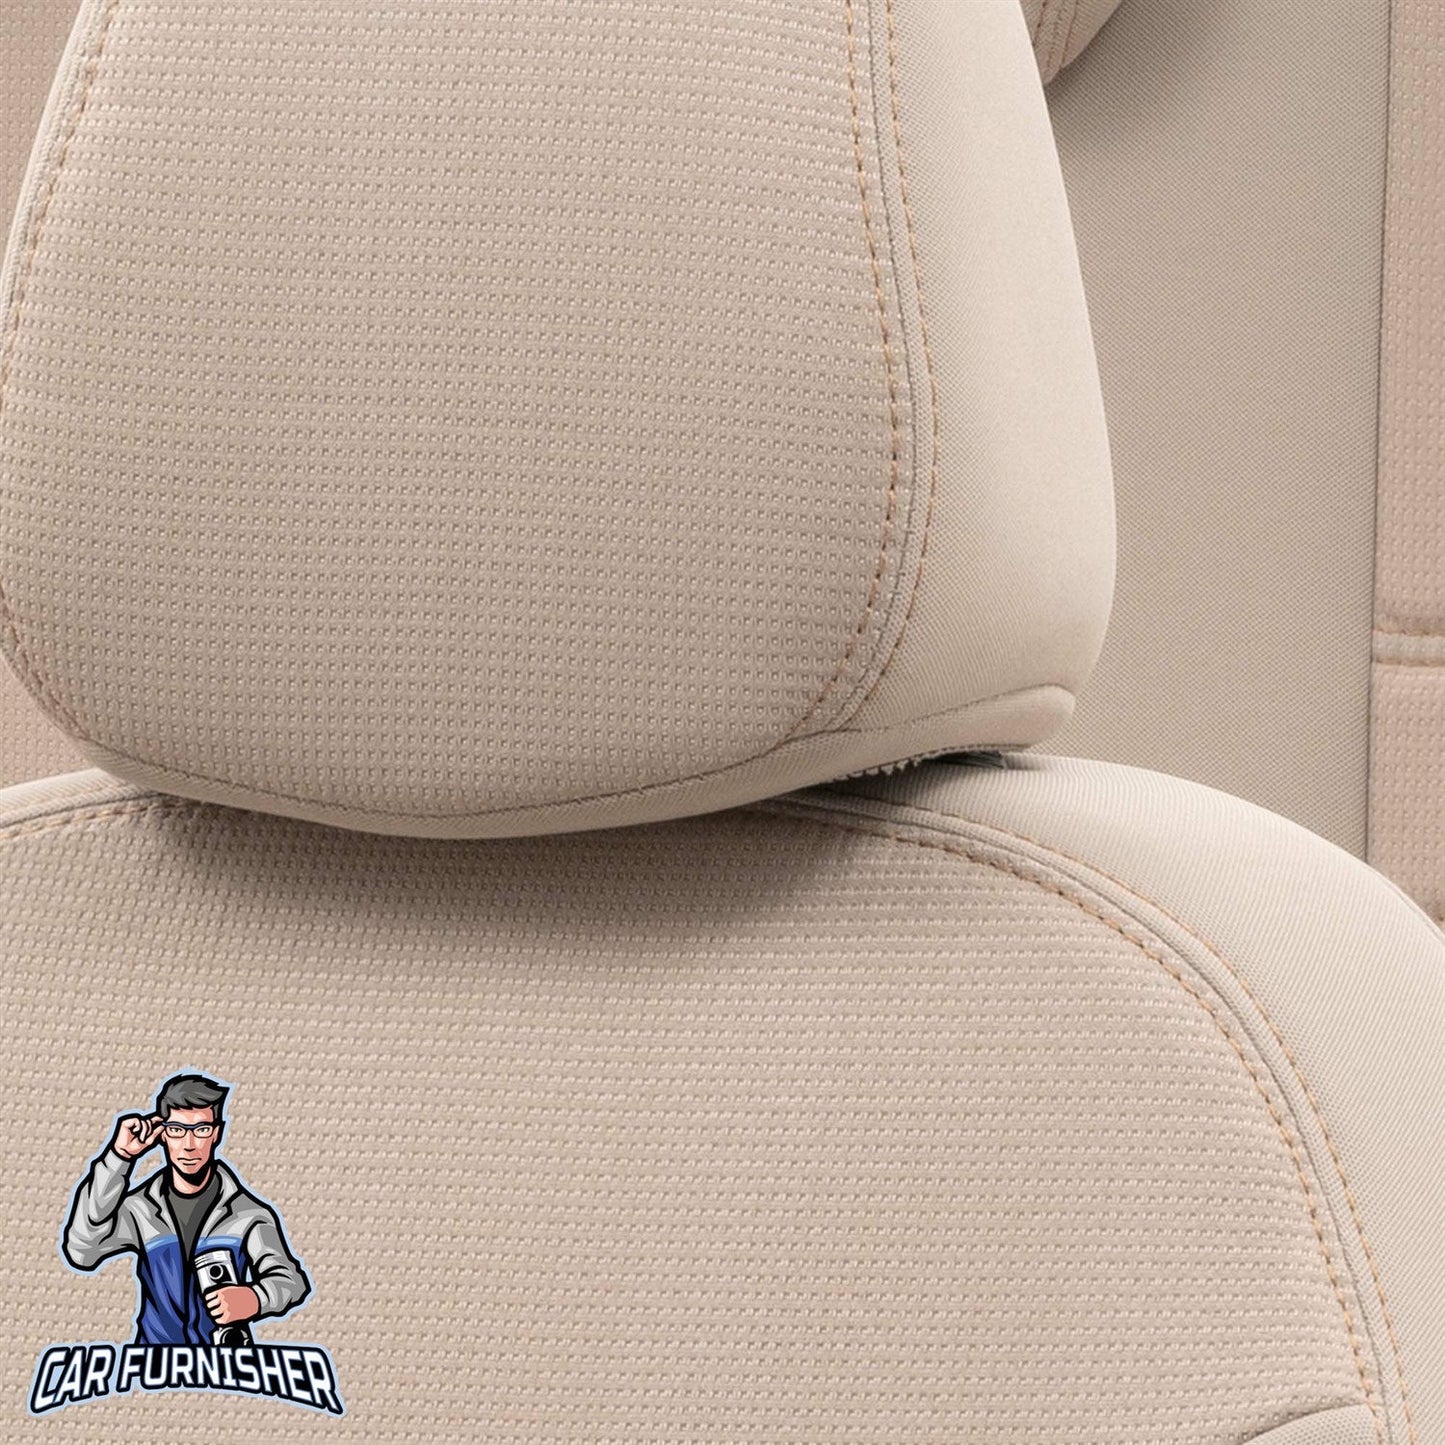 Volvo XC40 Seat Cover Original Jacquard Design Beige Jacquard Fabric